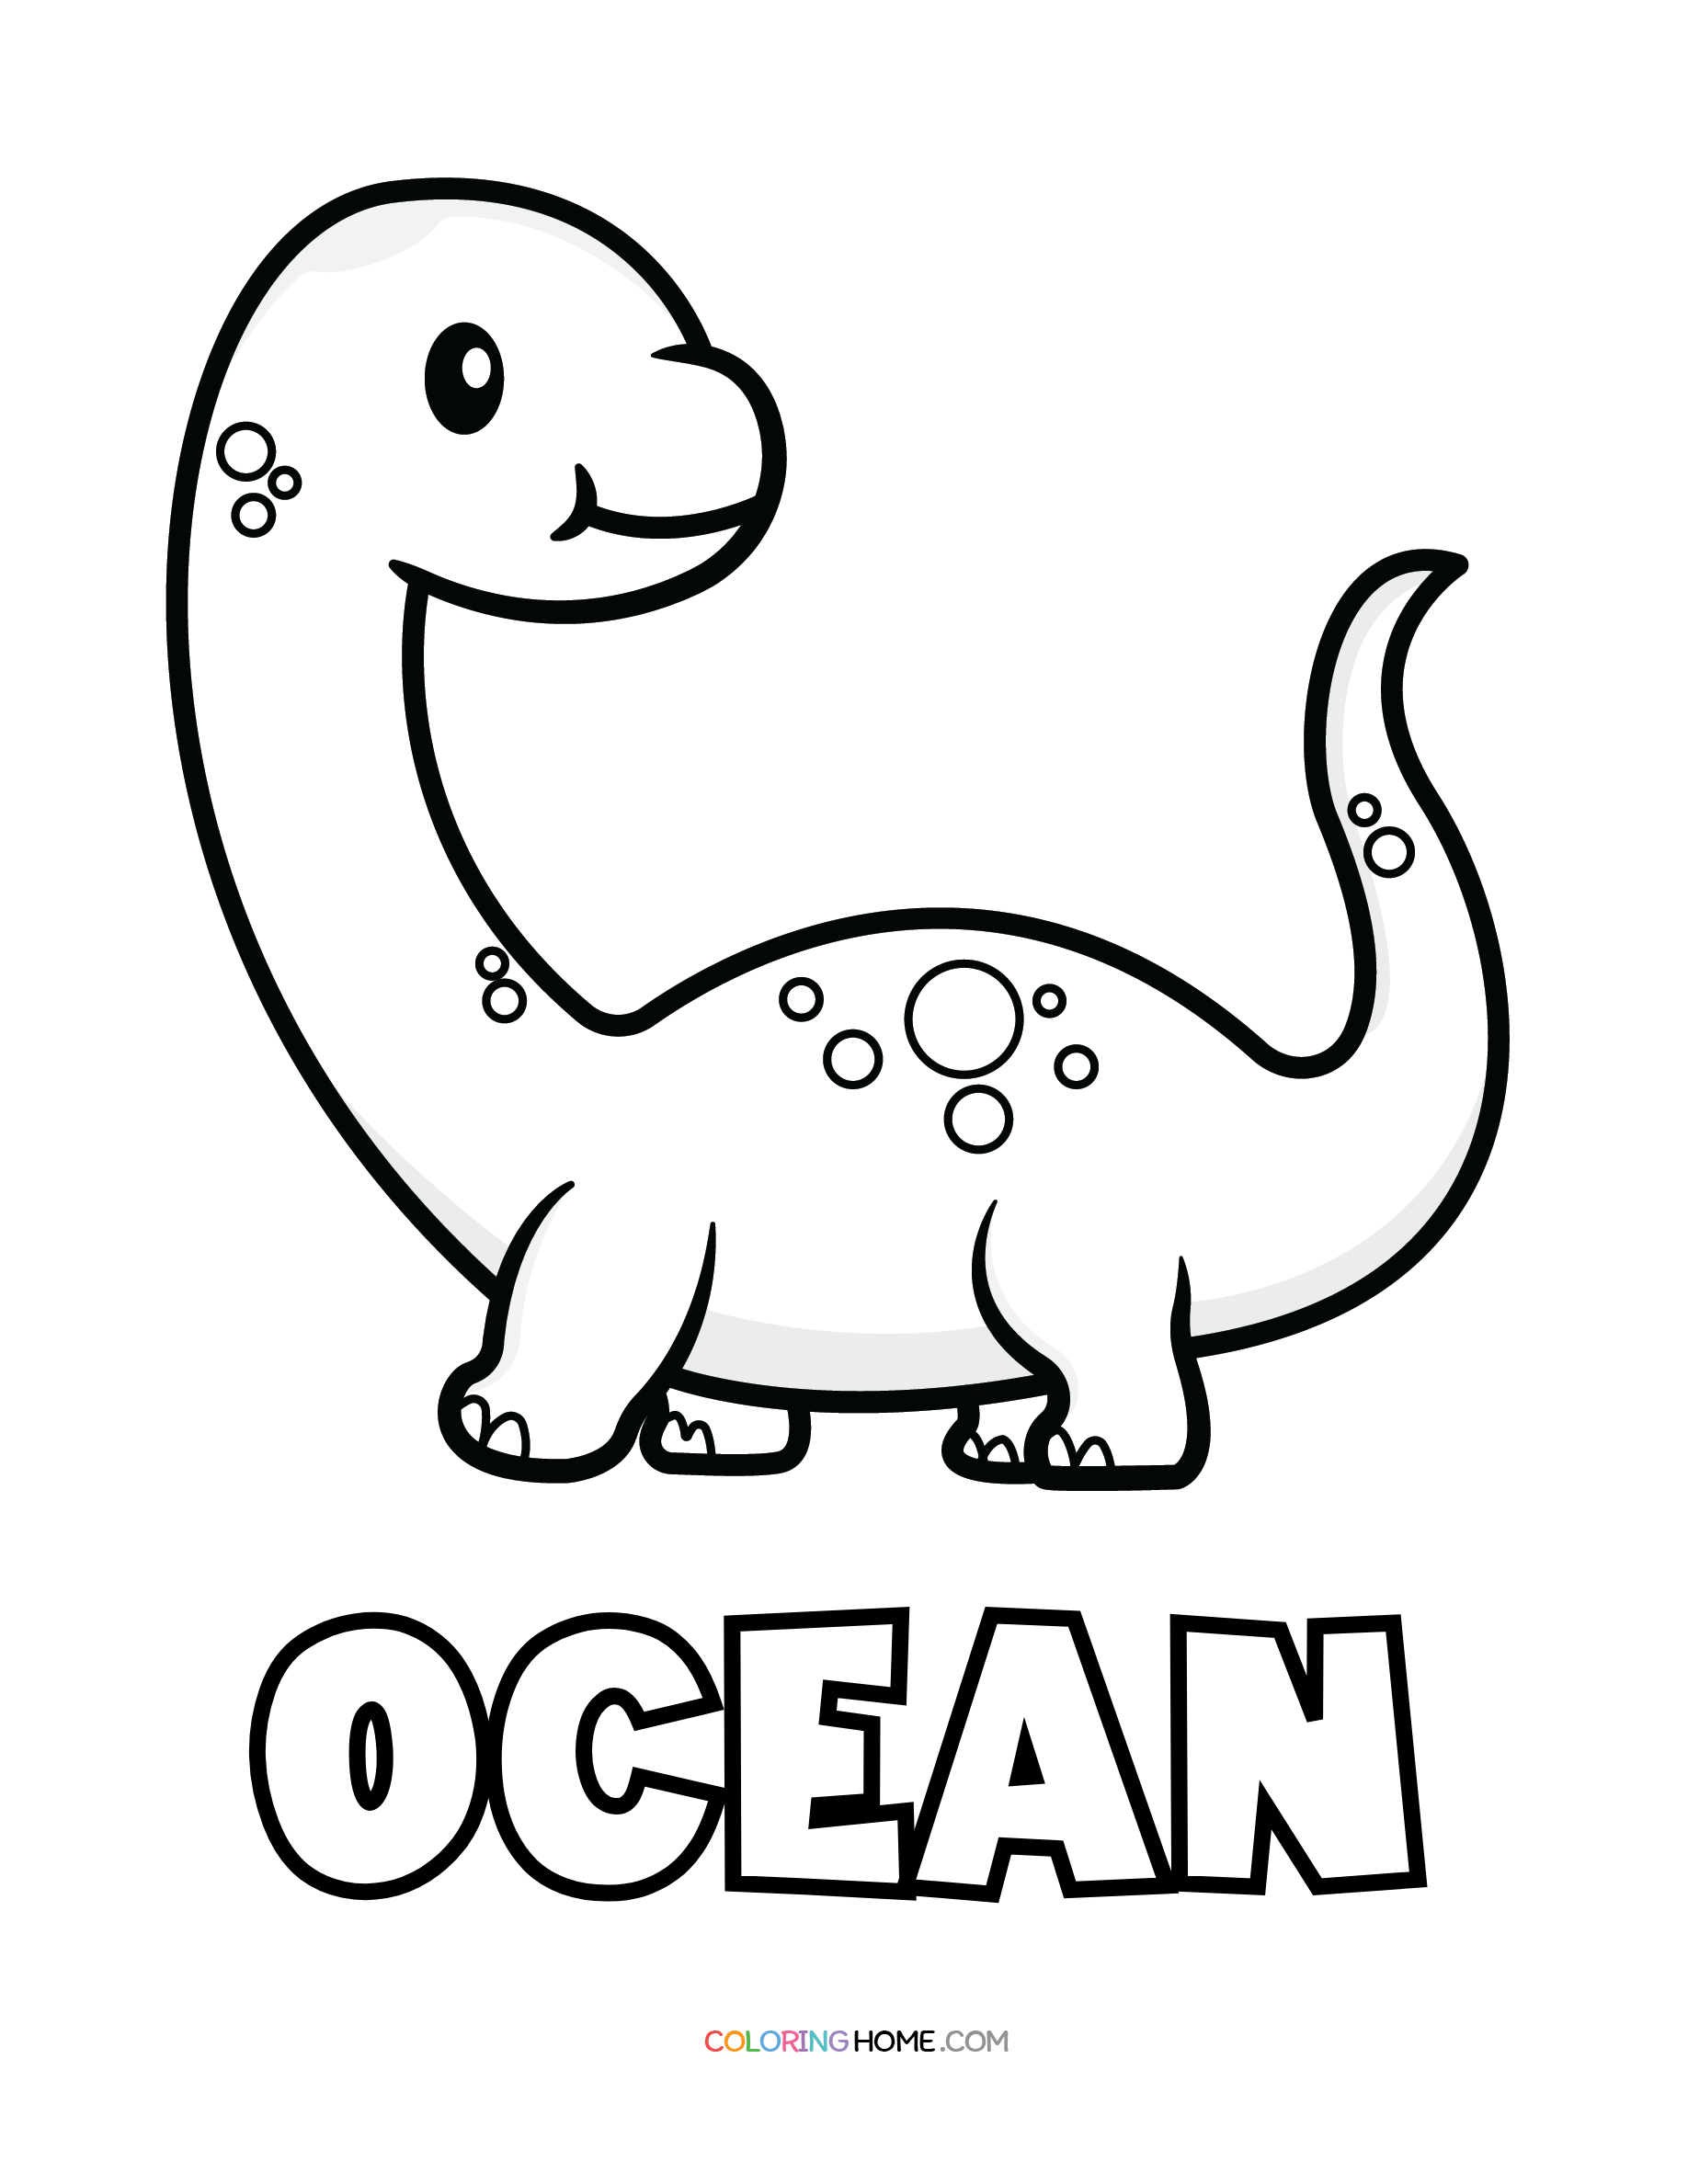 Ocean dinosaur coloring page